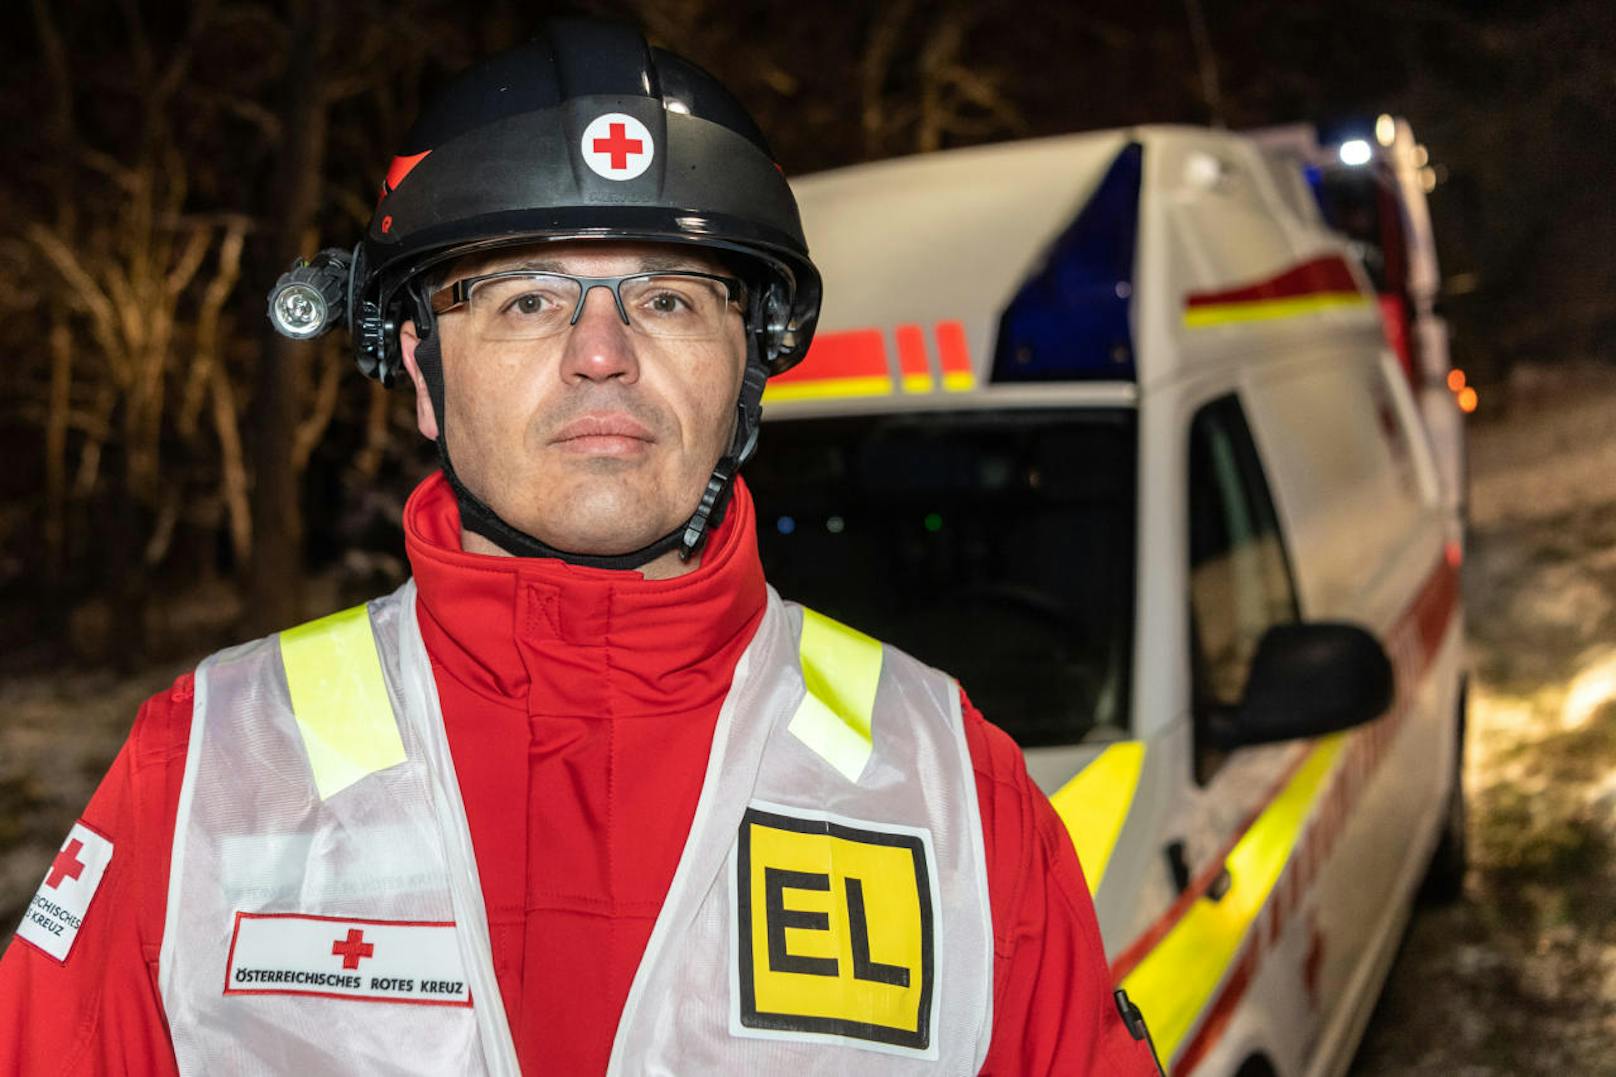 "Zwei Personen wurden zur Versorgung in das Klinikum Amstetten gebracht", so der Einsatzleiter der Rettung OVD Klemens Landgraf.